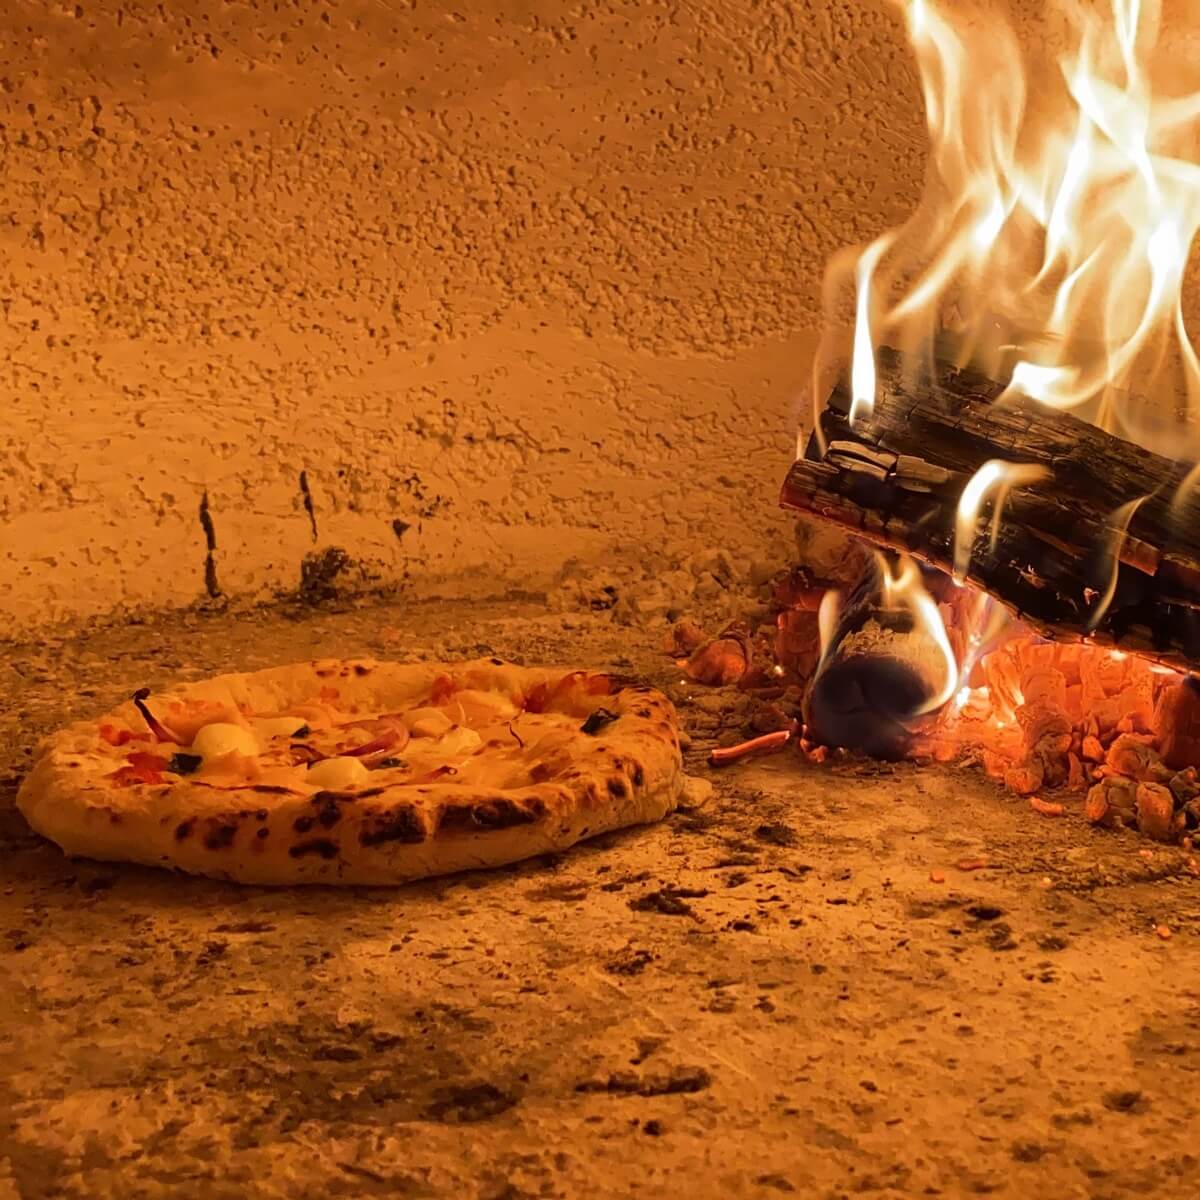 пицца из печи неаполитанская фото 47